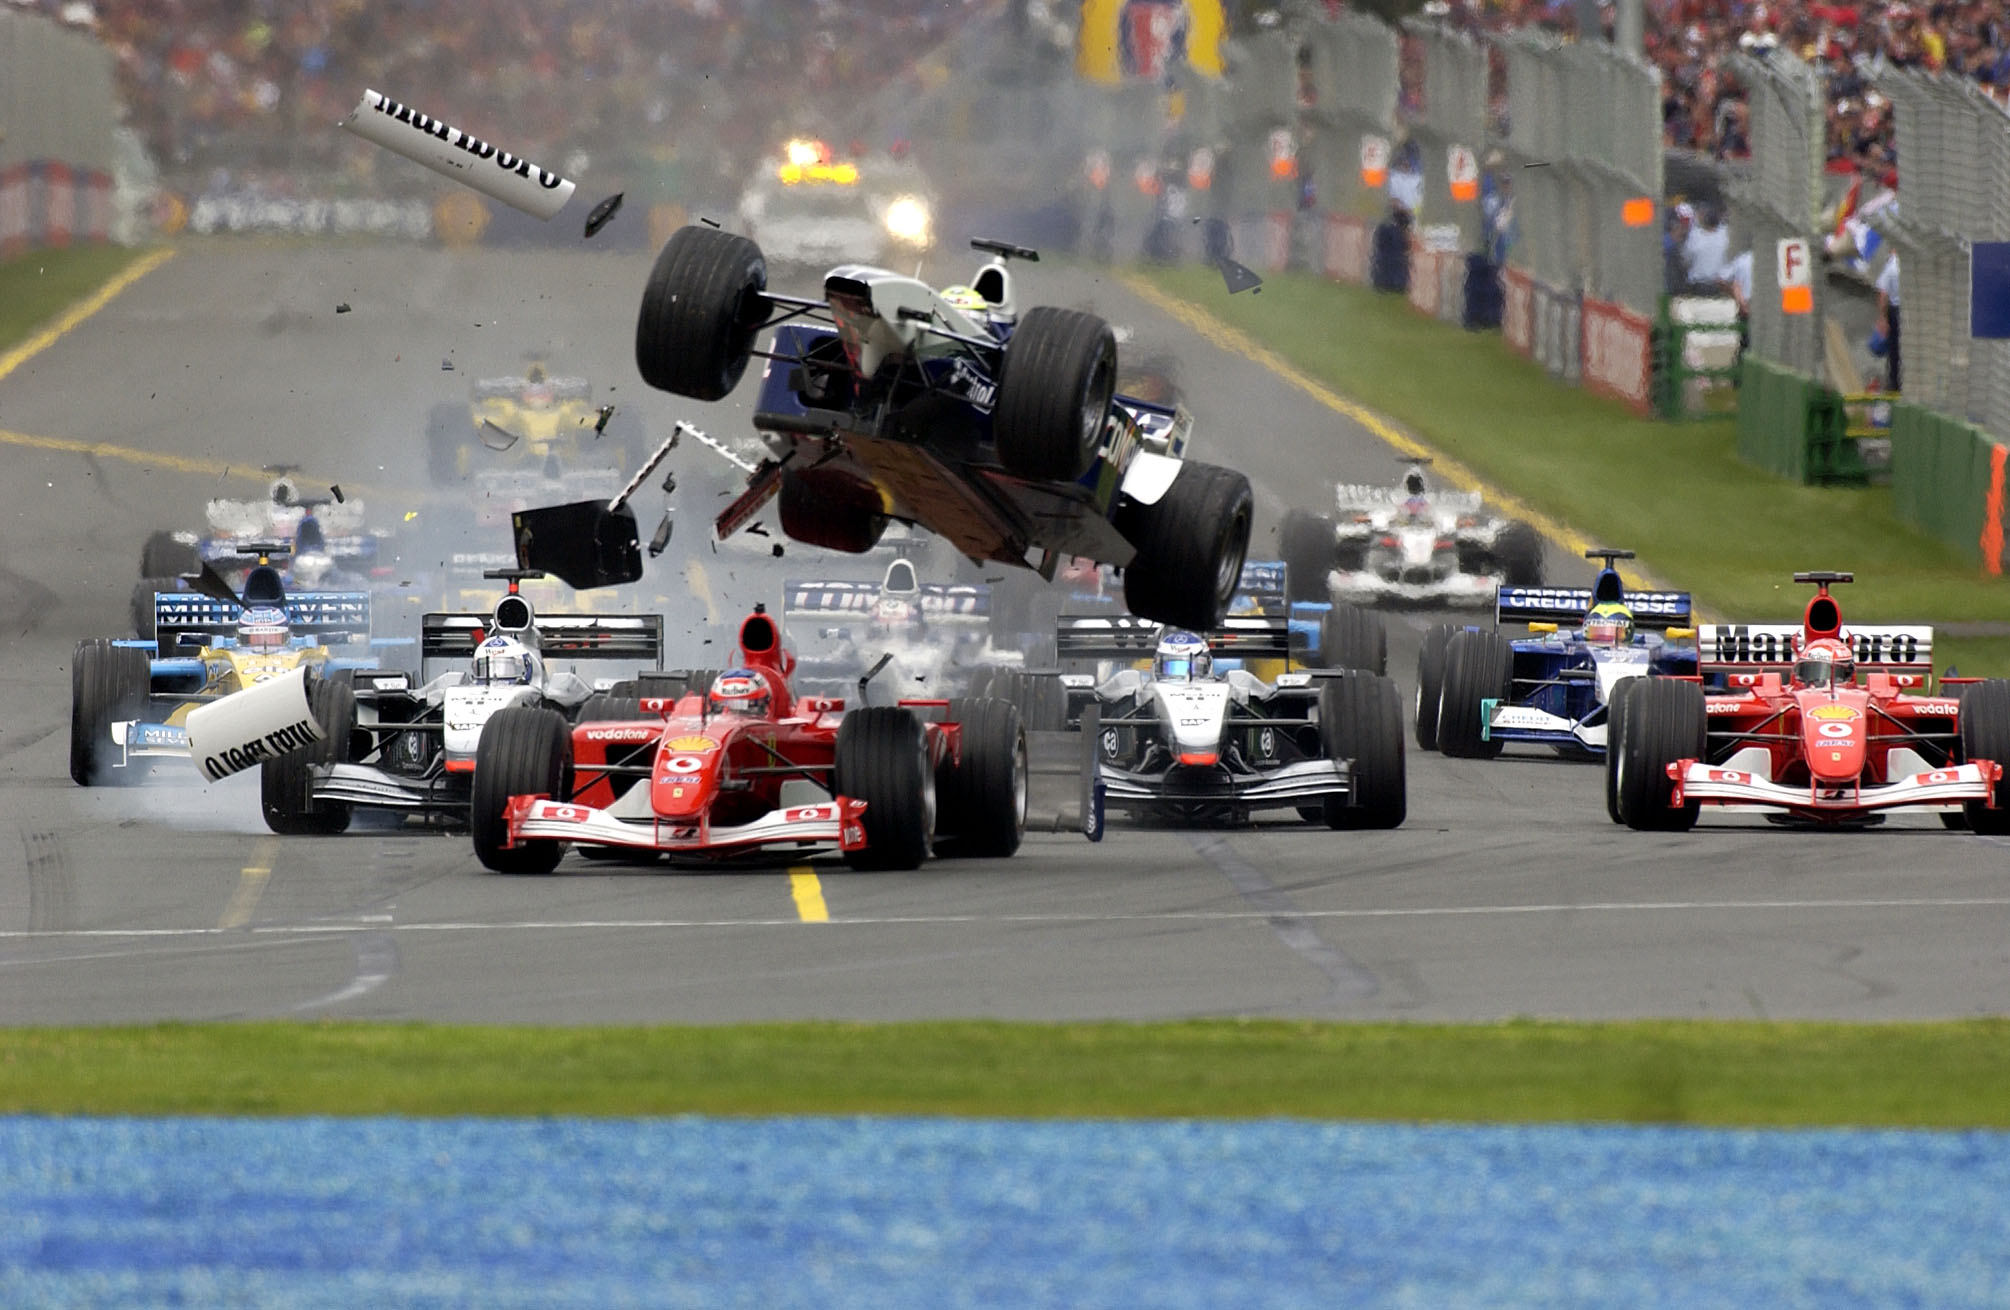 Ausztrál Nagydíj, 2002, rajt, baleset, Ralf Schumacher, Williams, Rubens Barrichello, Ferrari